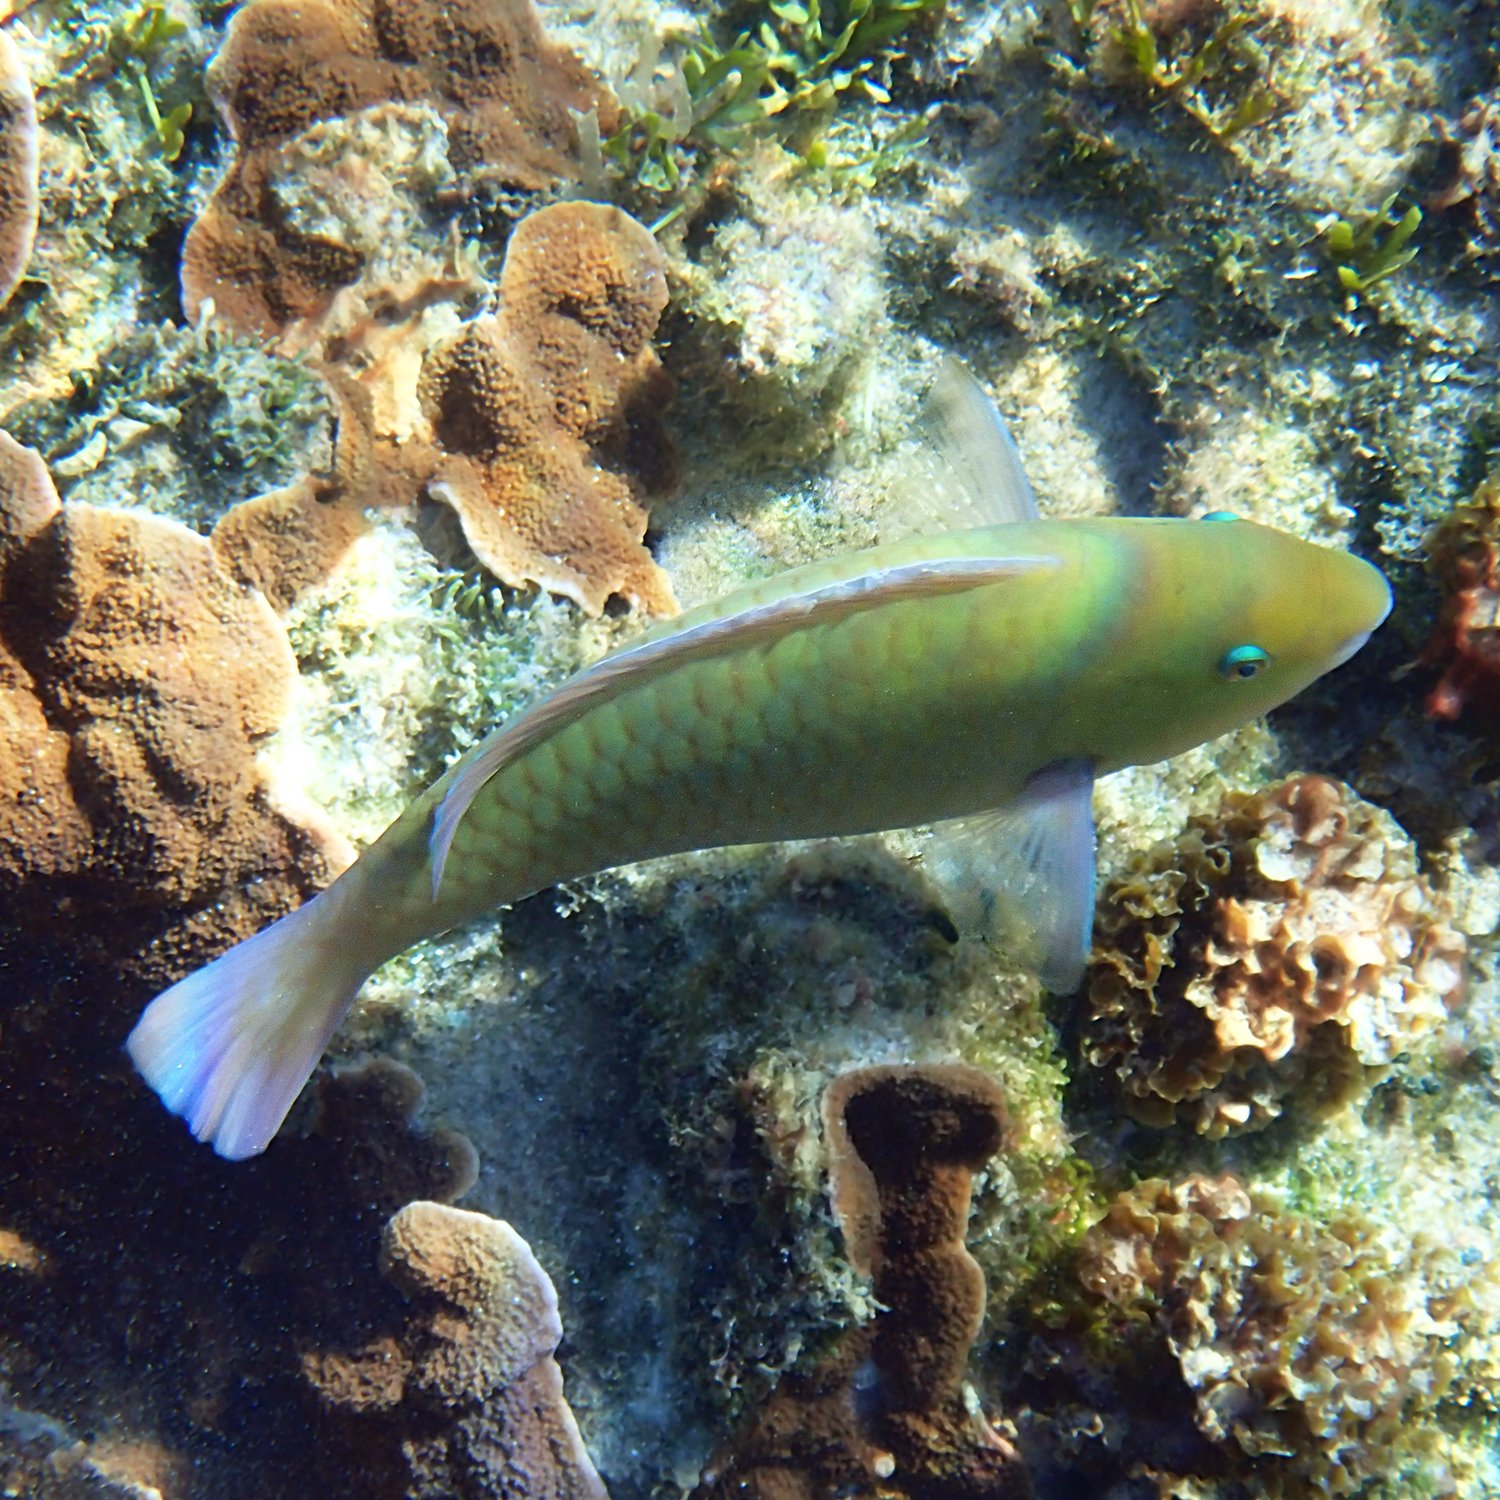 Surf parrotfish - Scarus rivulatus